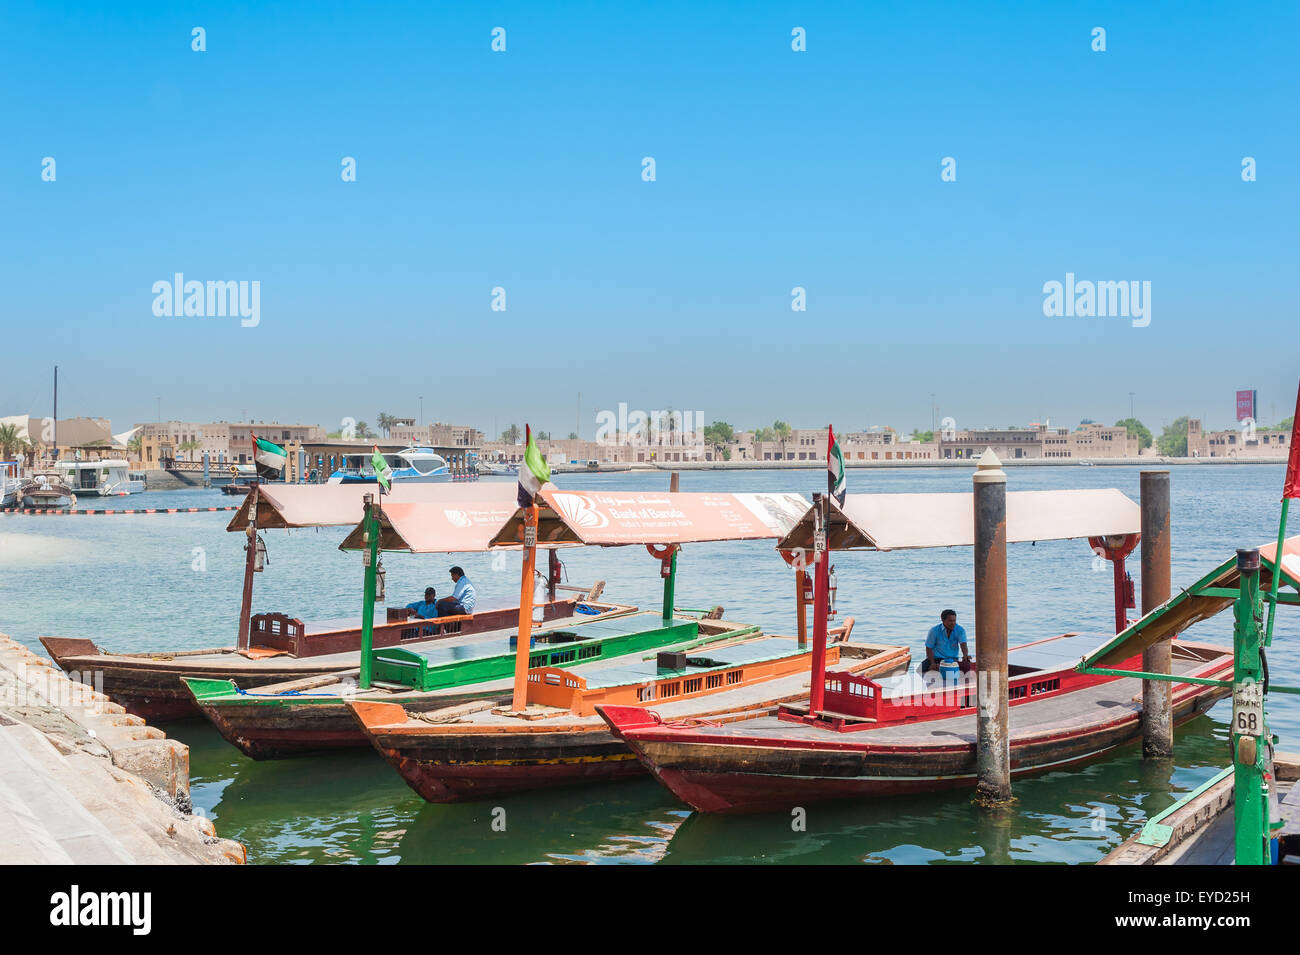 Dubai, Vereinigte Arabische Emirate - 9. Juni 2015: verfügt über Boote für den Transport von Personen auf dem Fluss Creek in Dubai Stockfoto